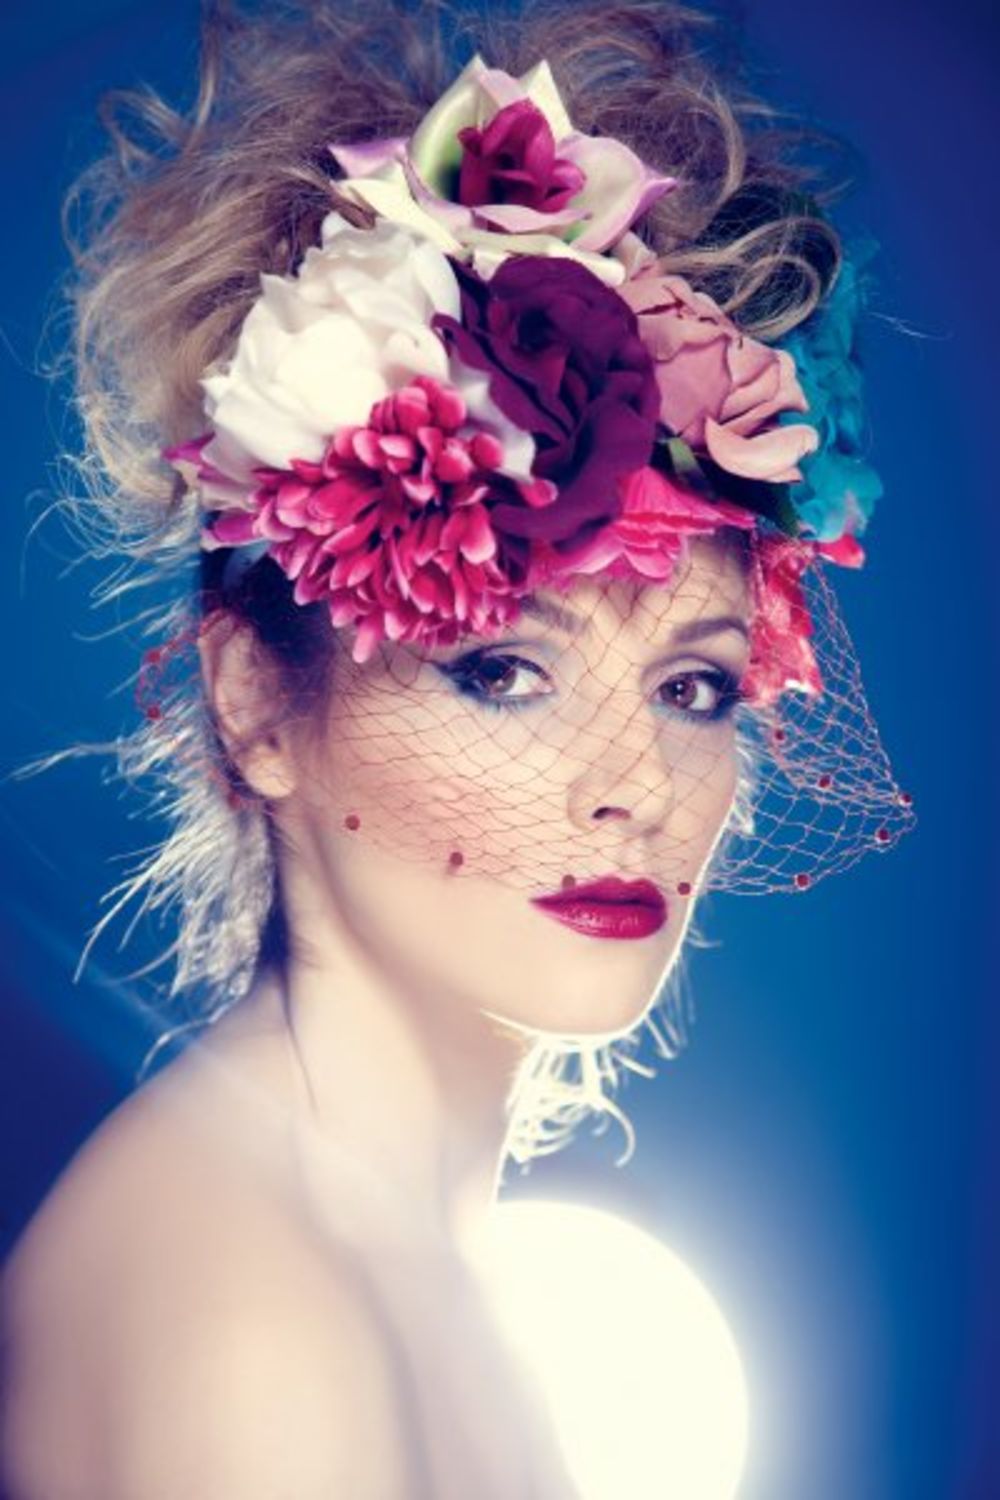 Šarmantna glumica Bojana Stefanović dekorativnom kozmetikom  eksperimentiše pred večernje izlaske kada oponaša stil šminkanja pedesetih godina pa na trepavice stavlja belu maskaru, a na usne crveni ruž